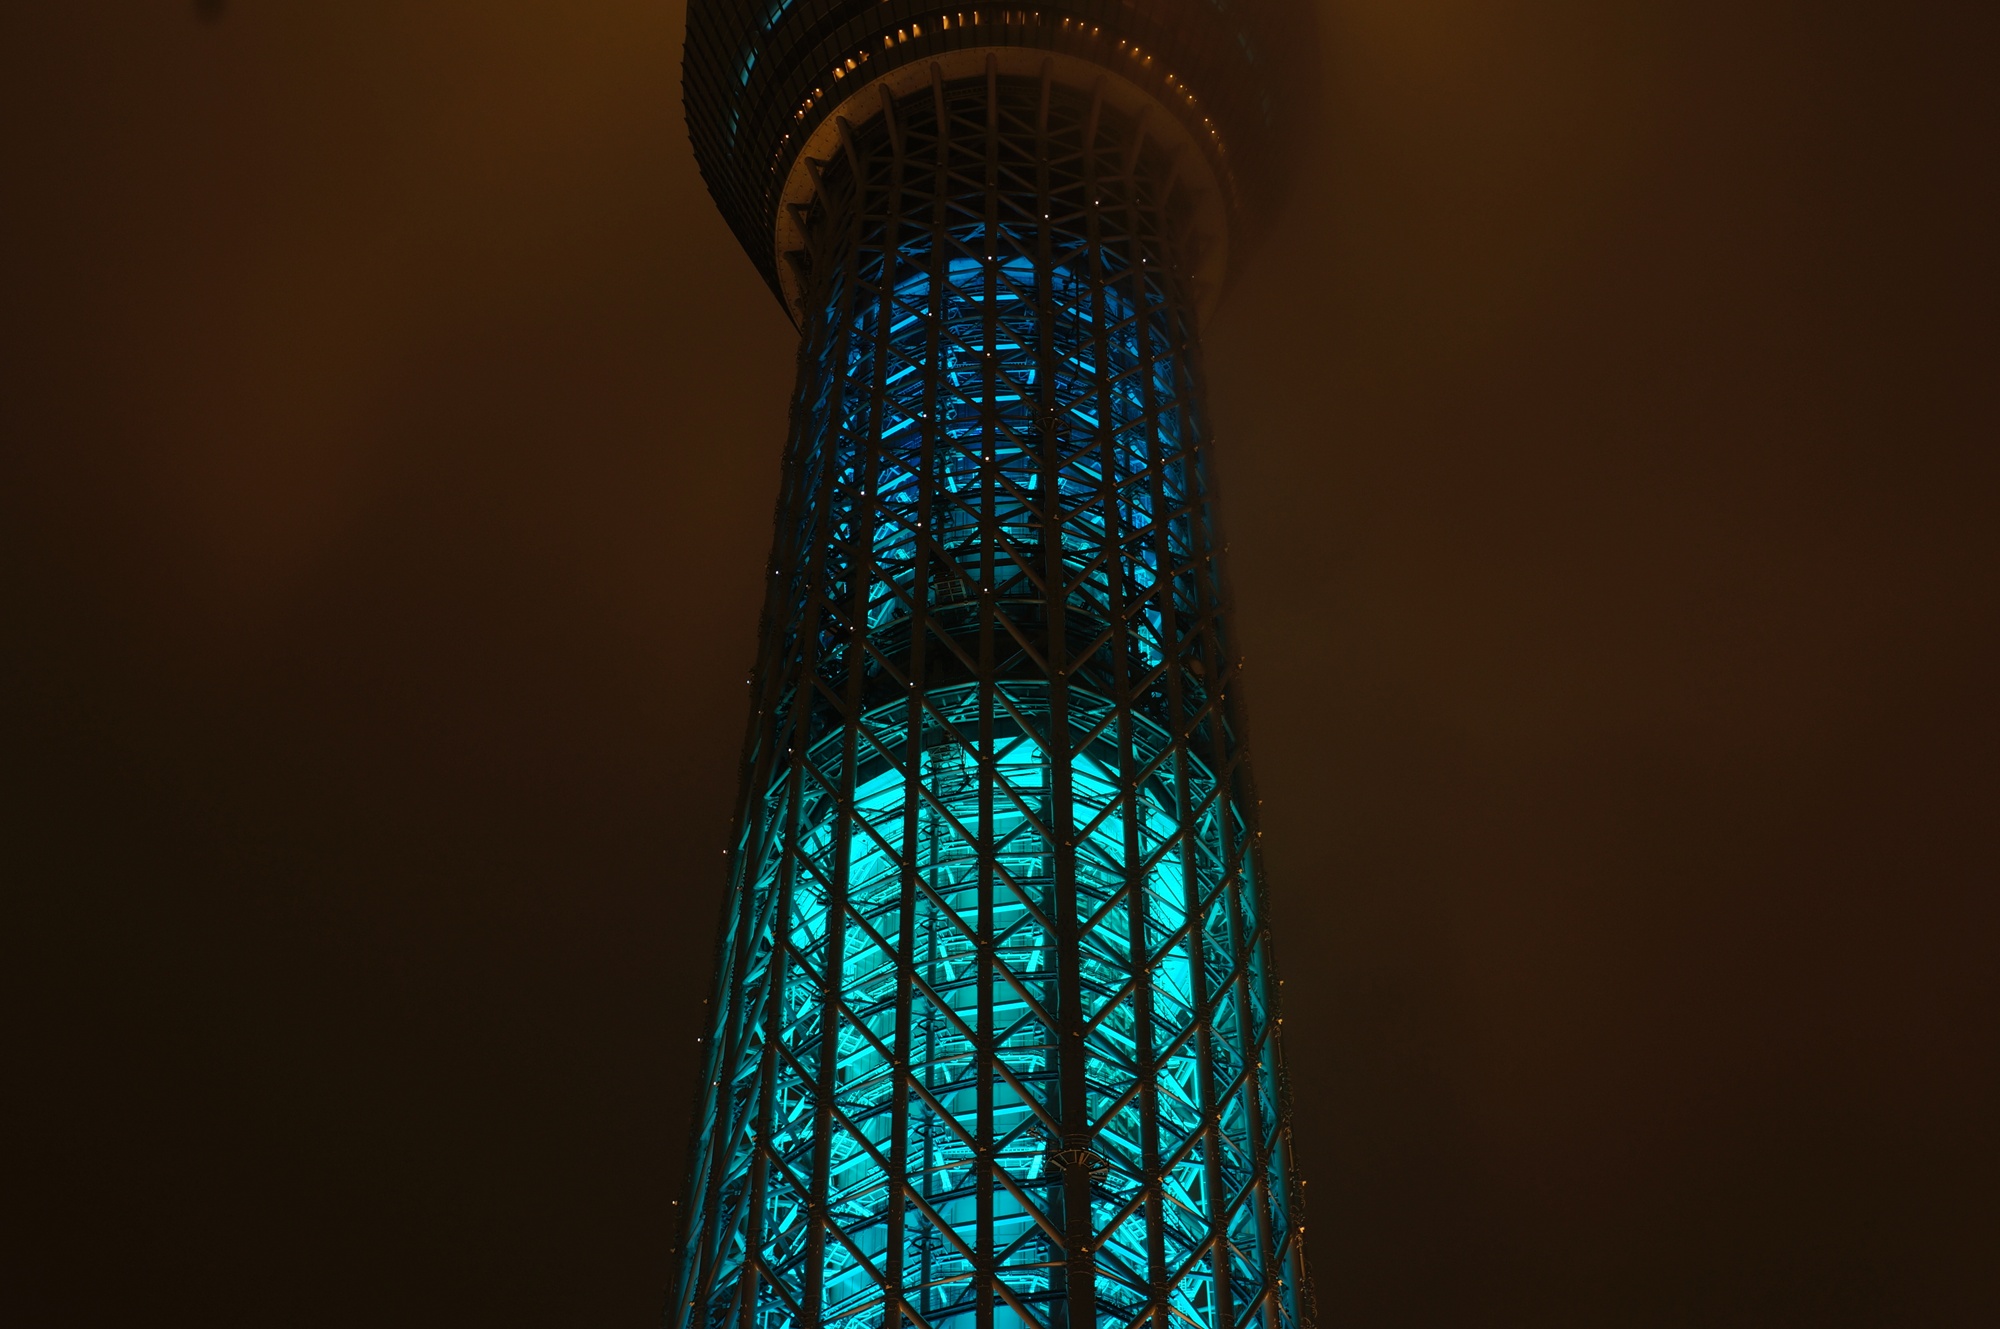 東京スカイツリーの七夕限定ライトアップを撮影してみた 一眼初心者がデジタル一眼カメラを買ってみたブログ